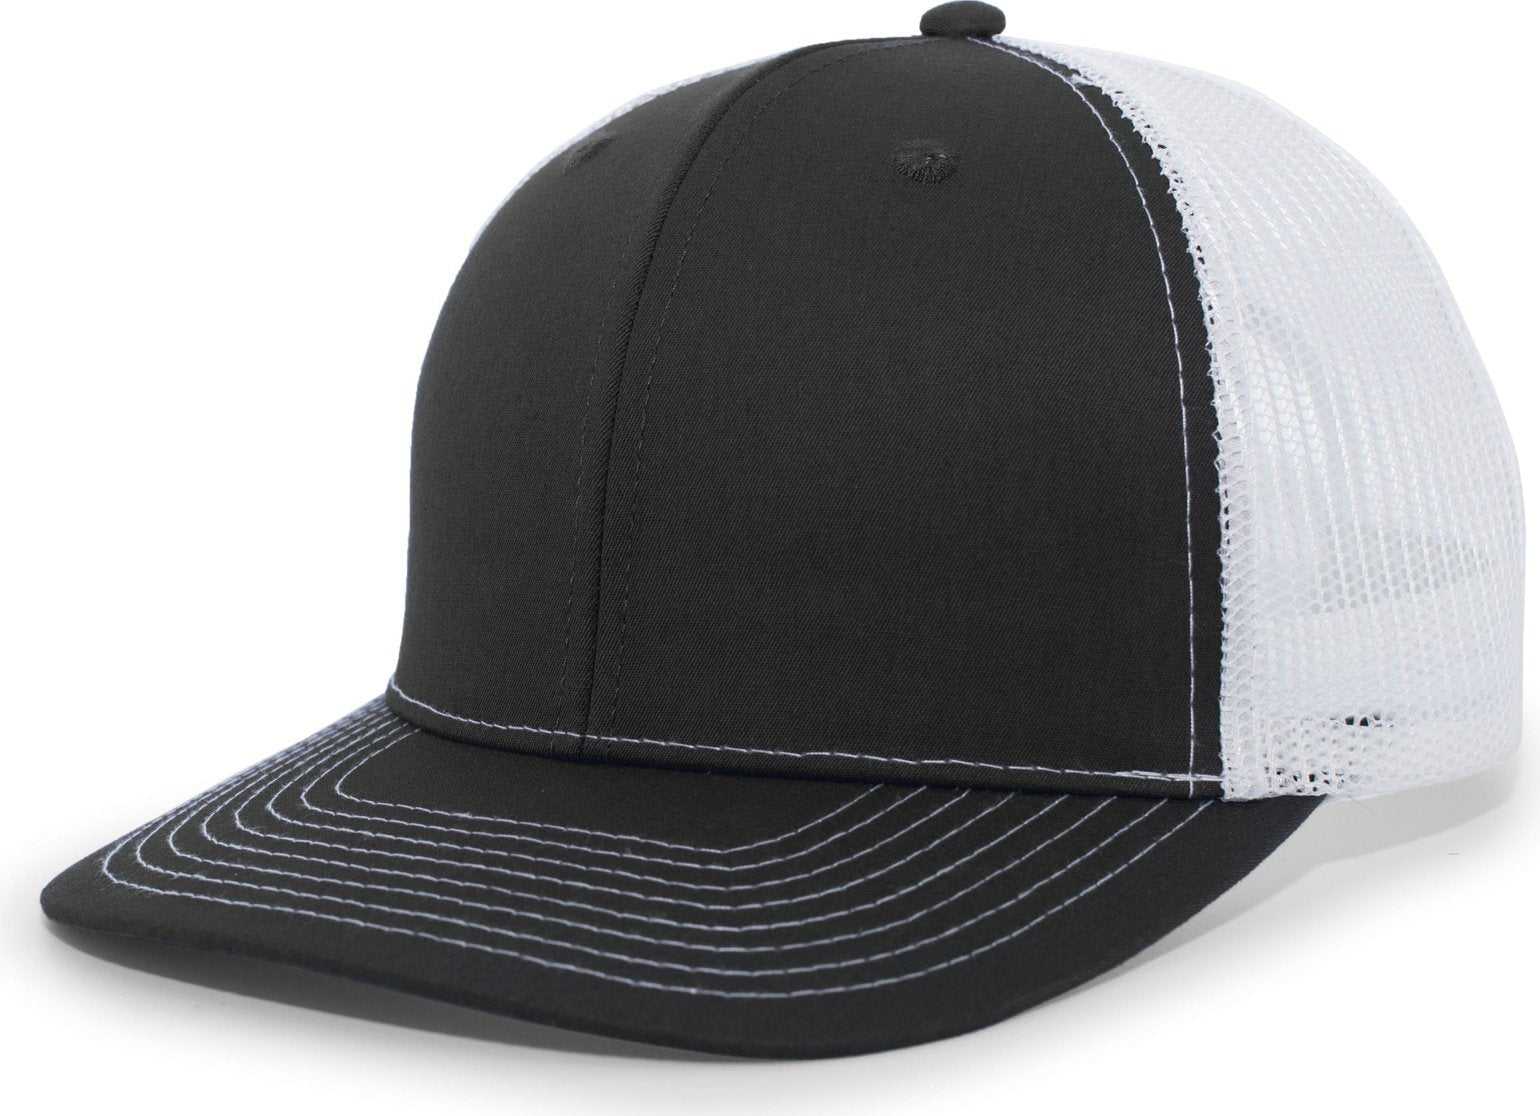 Pacific Headwear PE10 Trucker Snapback Cap - Black White - HIT a Double